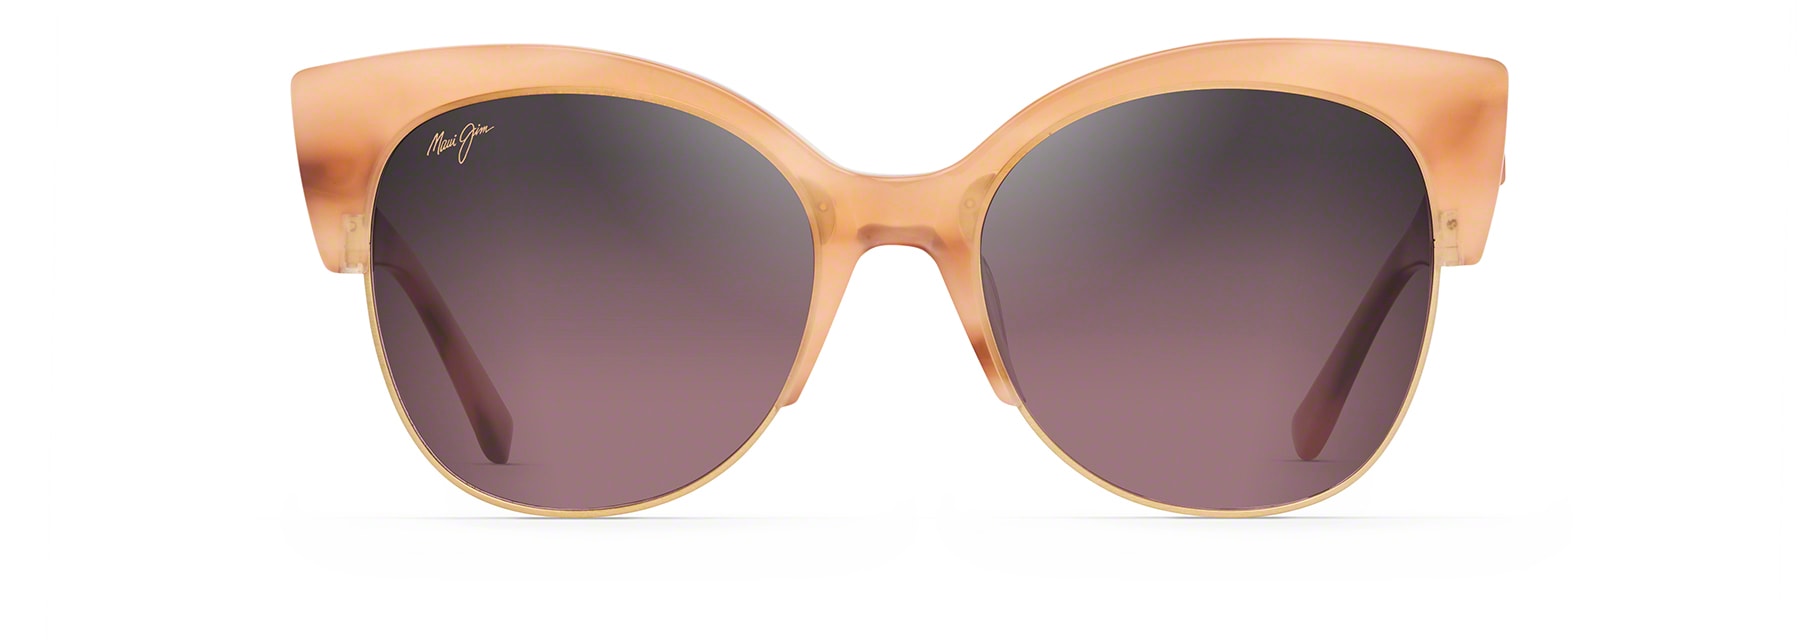 Mariposa Polarized Sunglasses | Maui Jim®